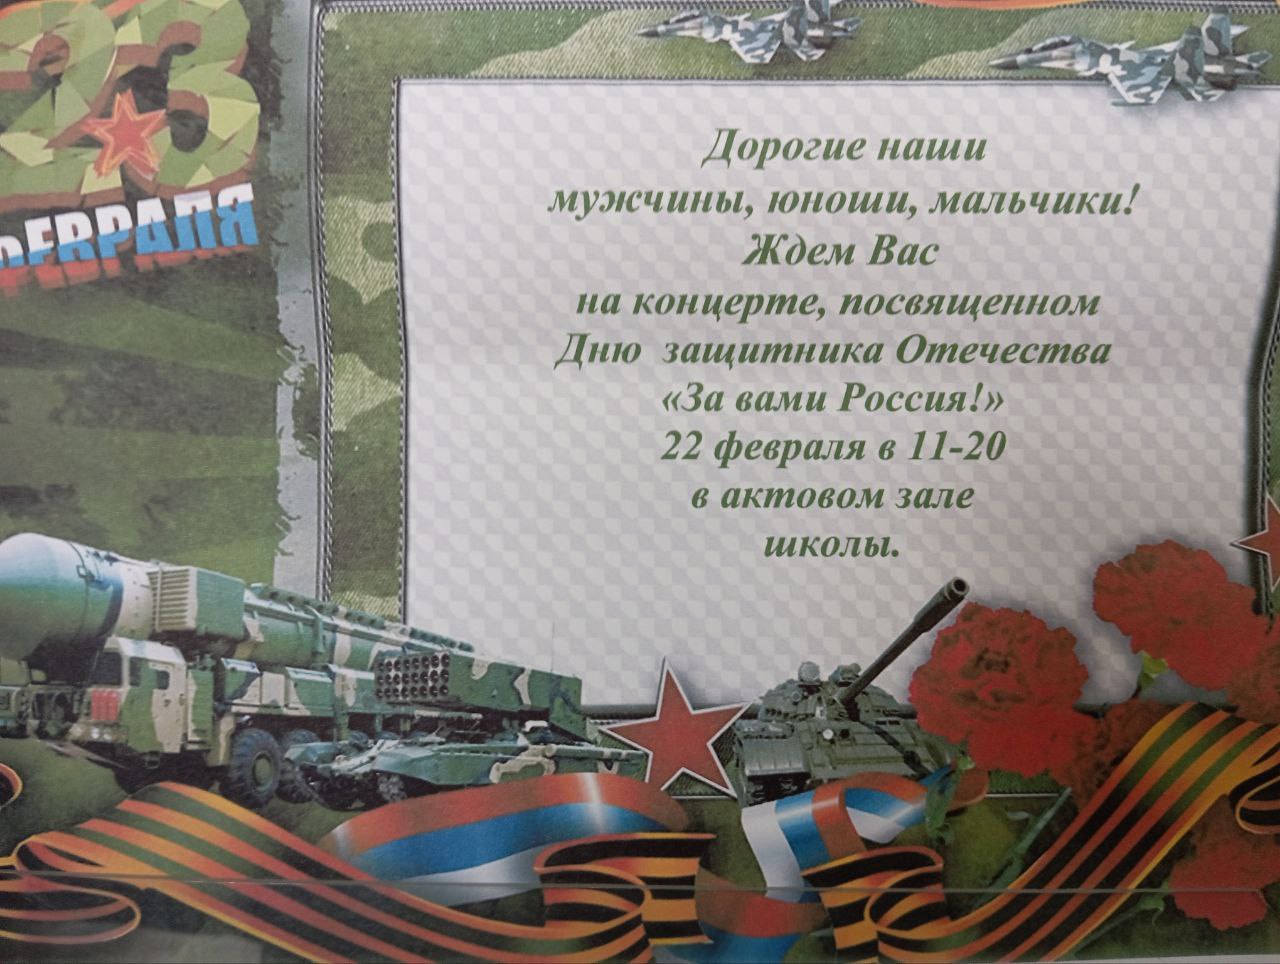 22 февраля в нашей школе пройдёт концерт, посвященный Дню защитника Отечества!.